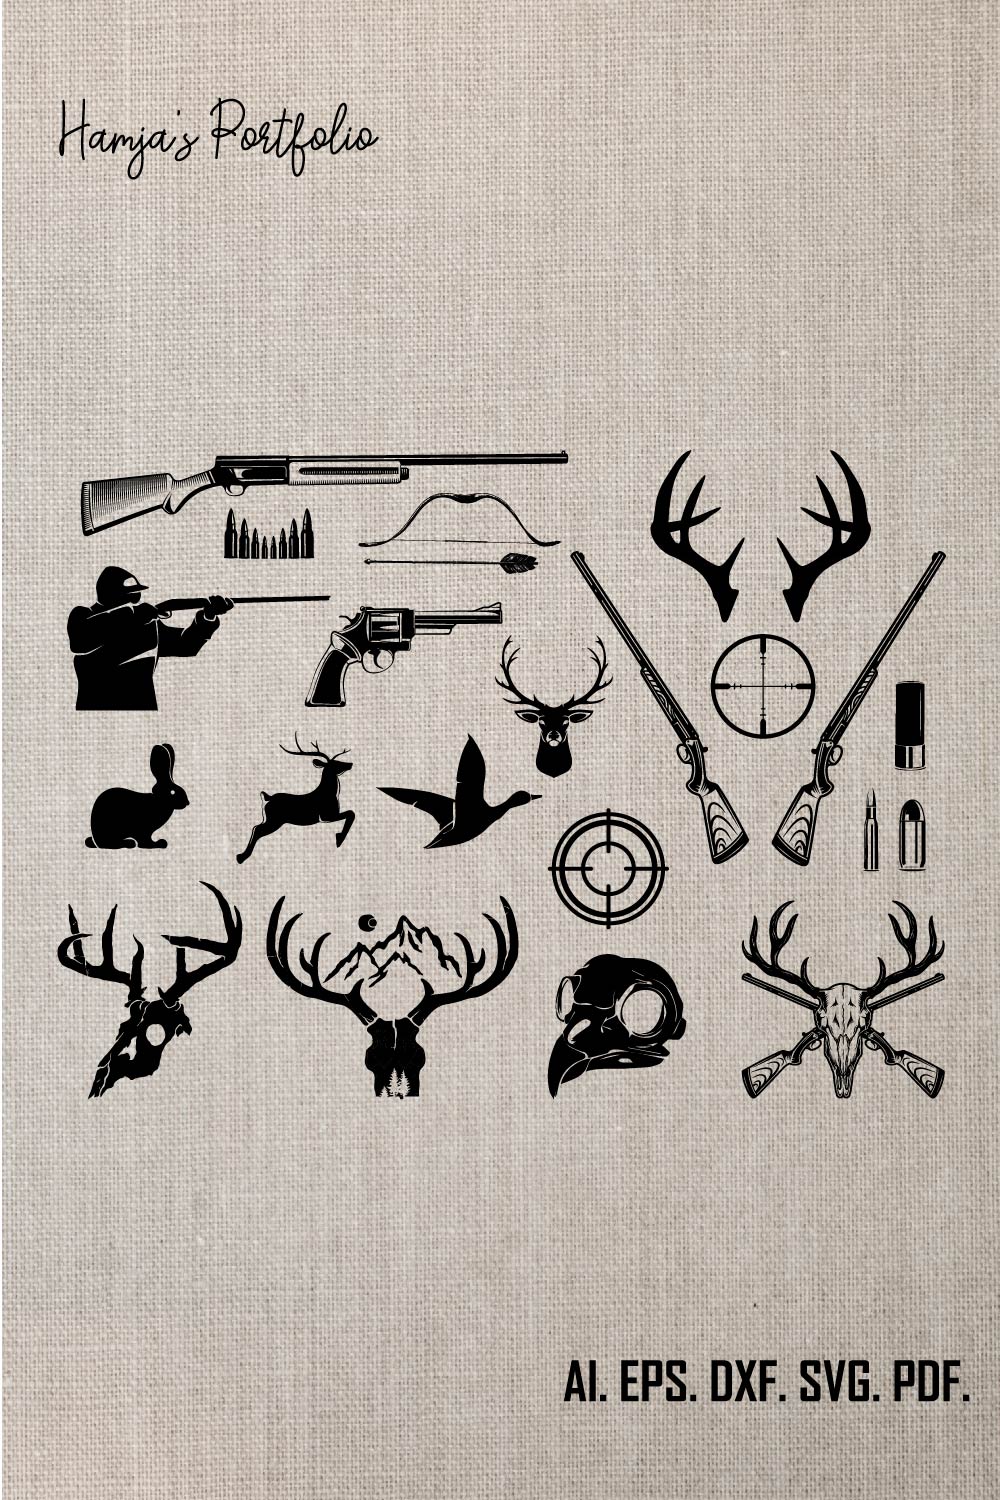 Hunting SVG Bundle, Hunting Dad Svg, Deer Hunting Svg, Hunting and Fishing Svg, Retro deer hunting Svg pinterest preview image.